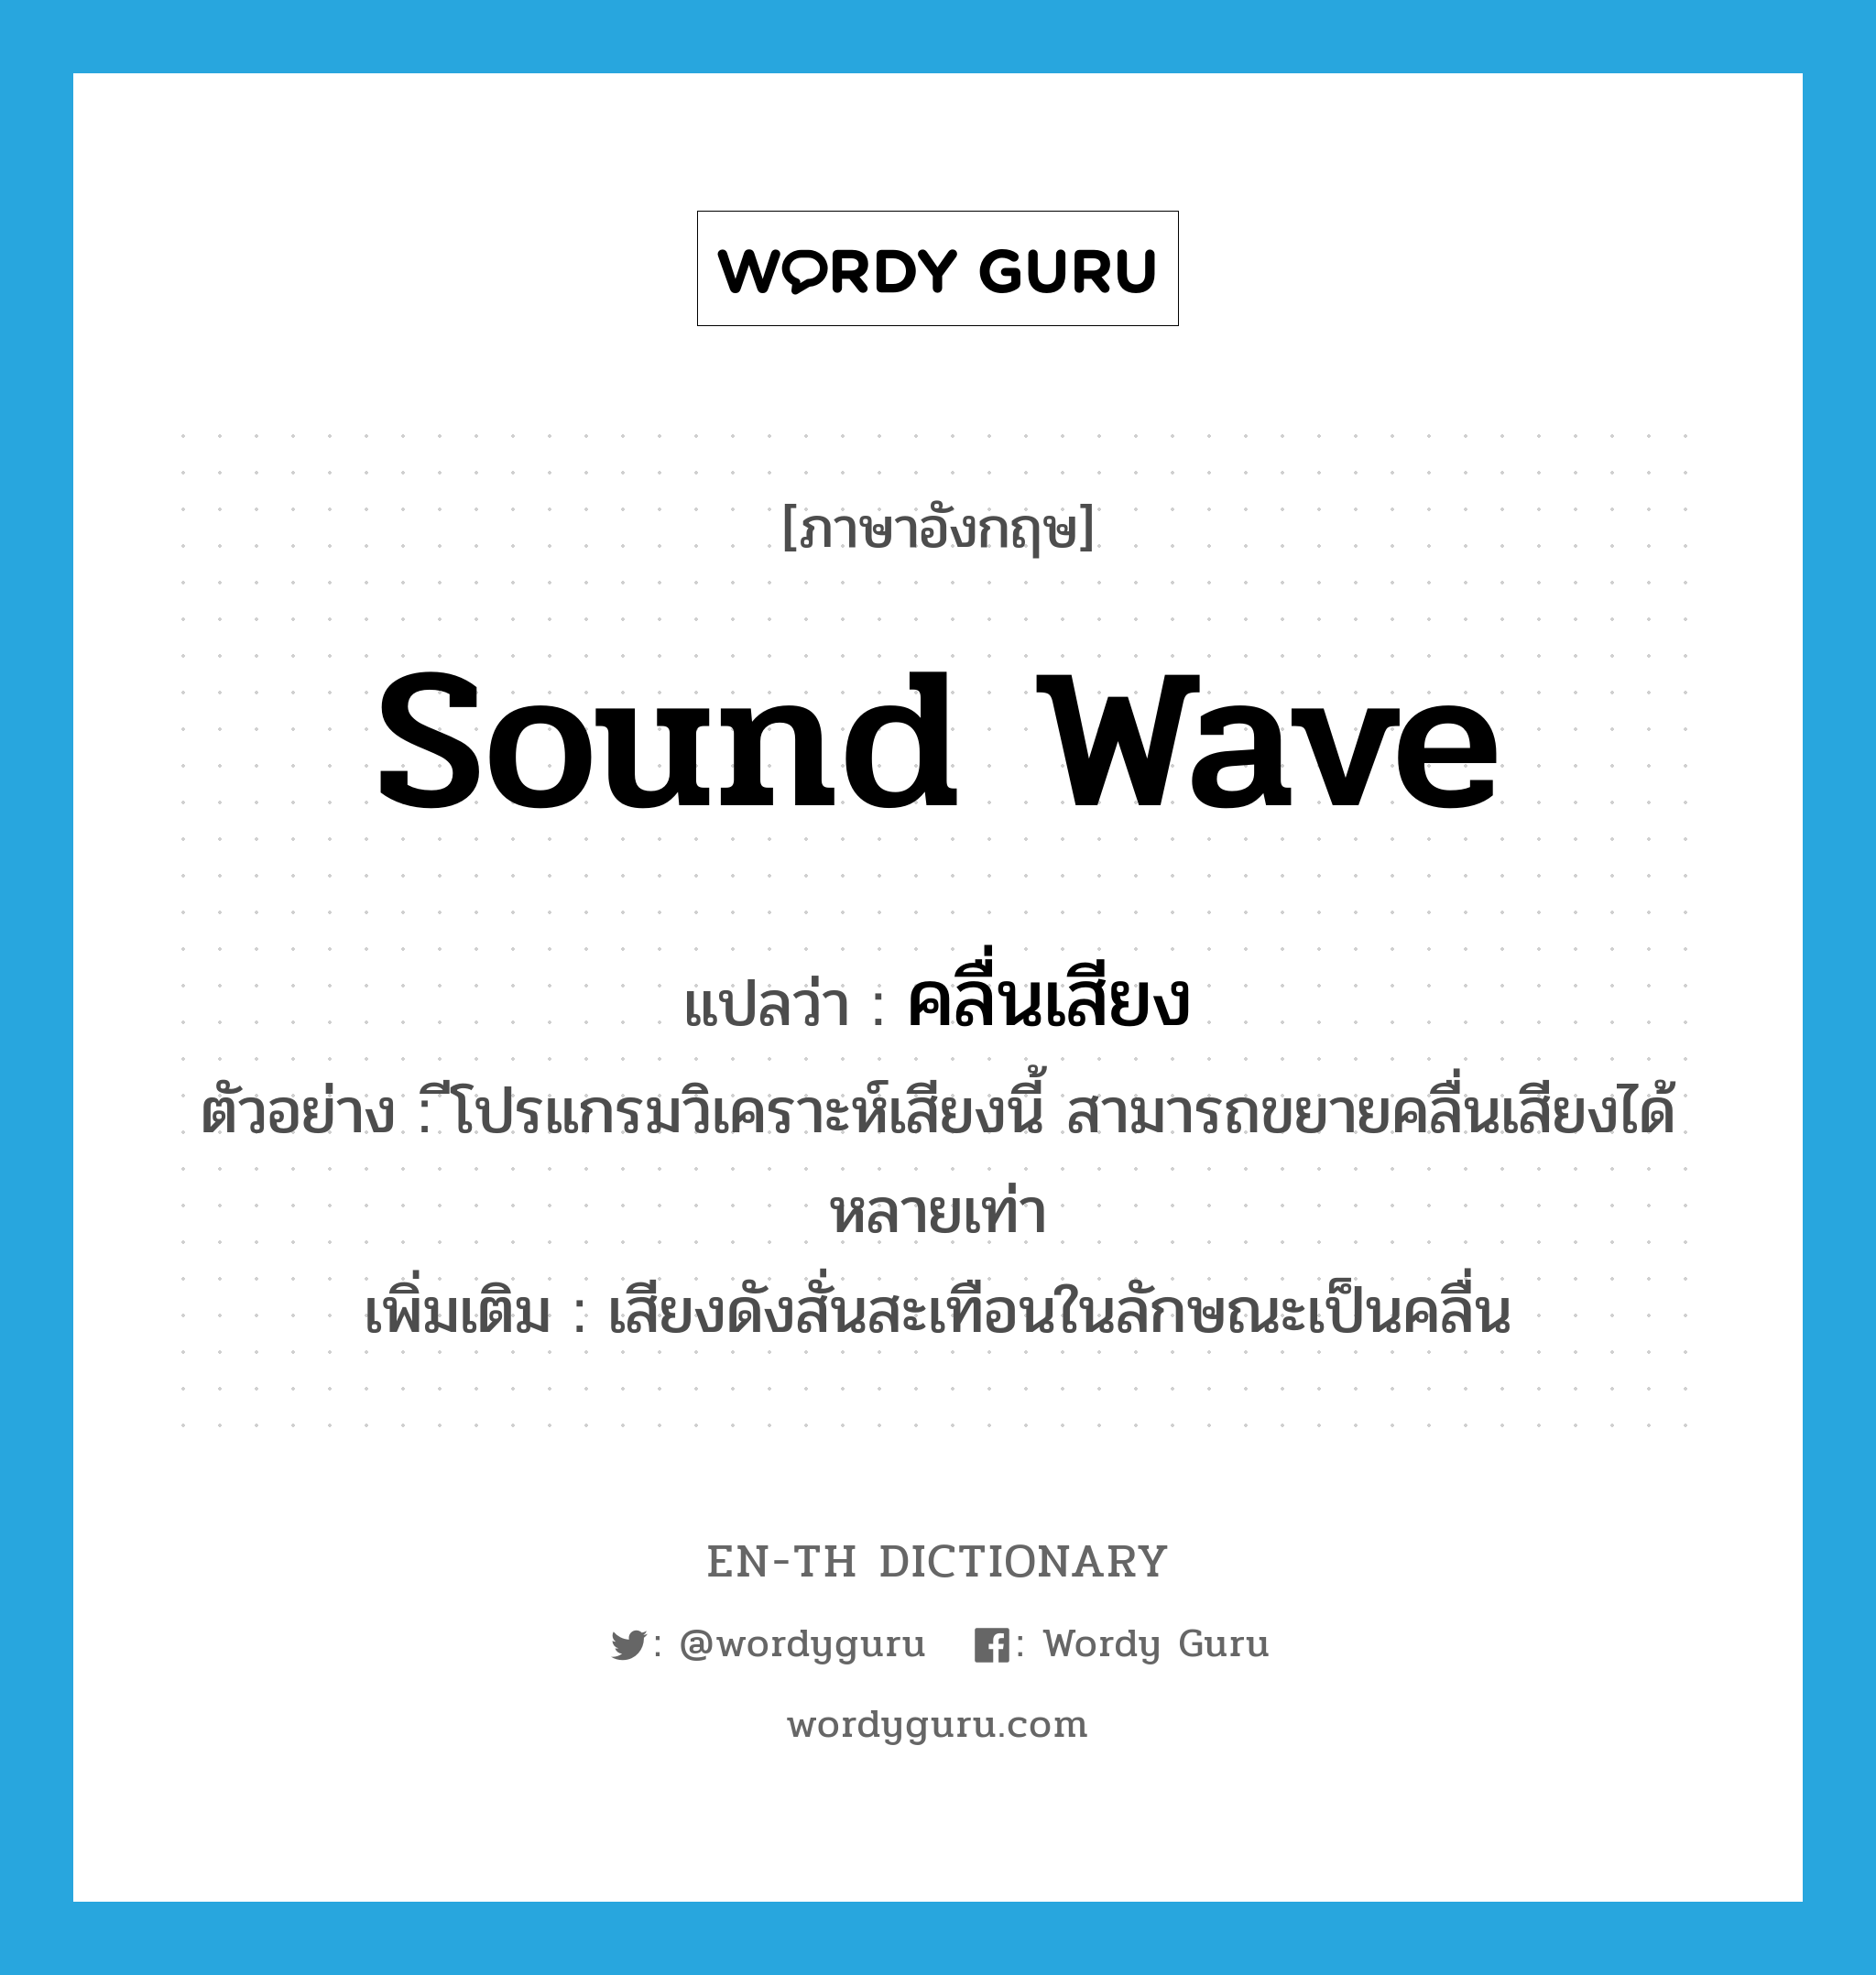 คลื่นเสียง ภาษาอังกฤษ?, คำศัพท์ภาษาอังกฤษ คลื่นเสียง แปลว่า sound wave ประเภท N ตัวอย่าง ีโปรแกรมวิเคราะห์เสียงนี้ สามารถขยายคลื่นเสียงได้หลายเท่า เพิ่มเติม เสียงดังสั่นสะเทือนในลักษณะเป็นคลื่น หมวด N